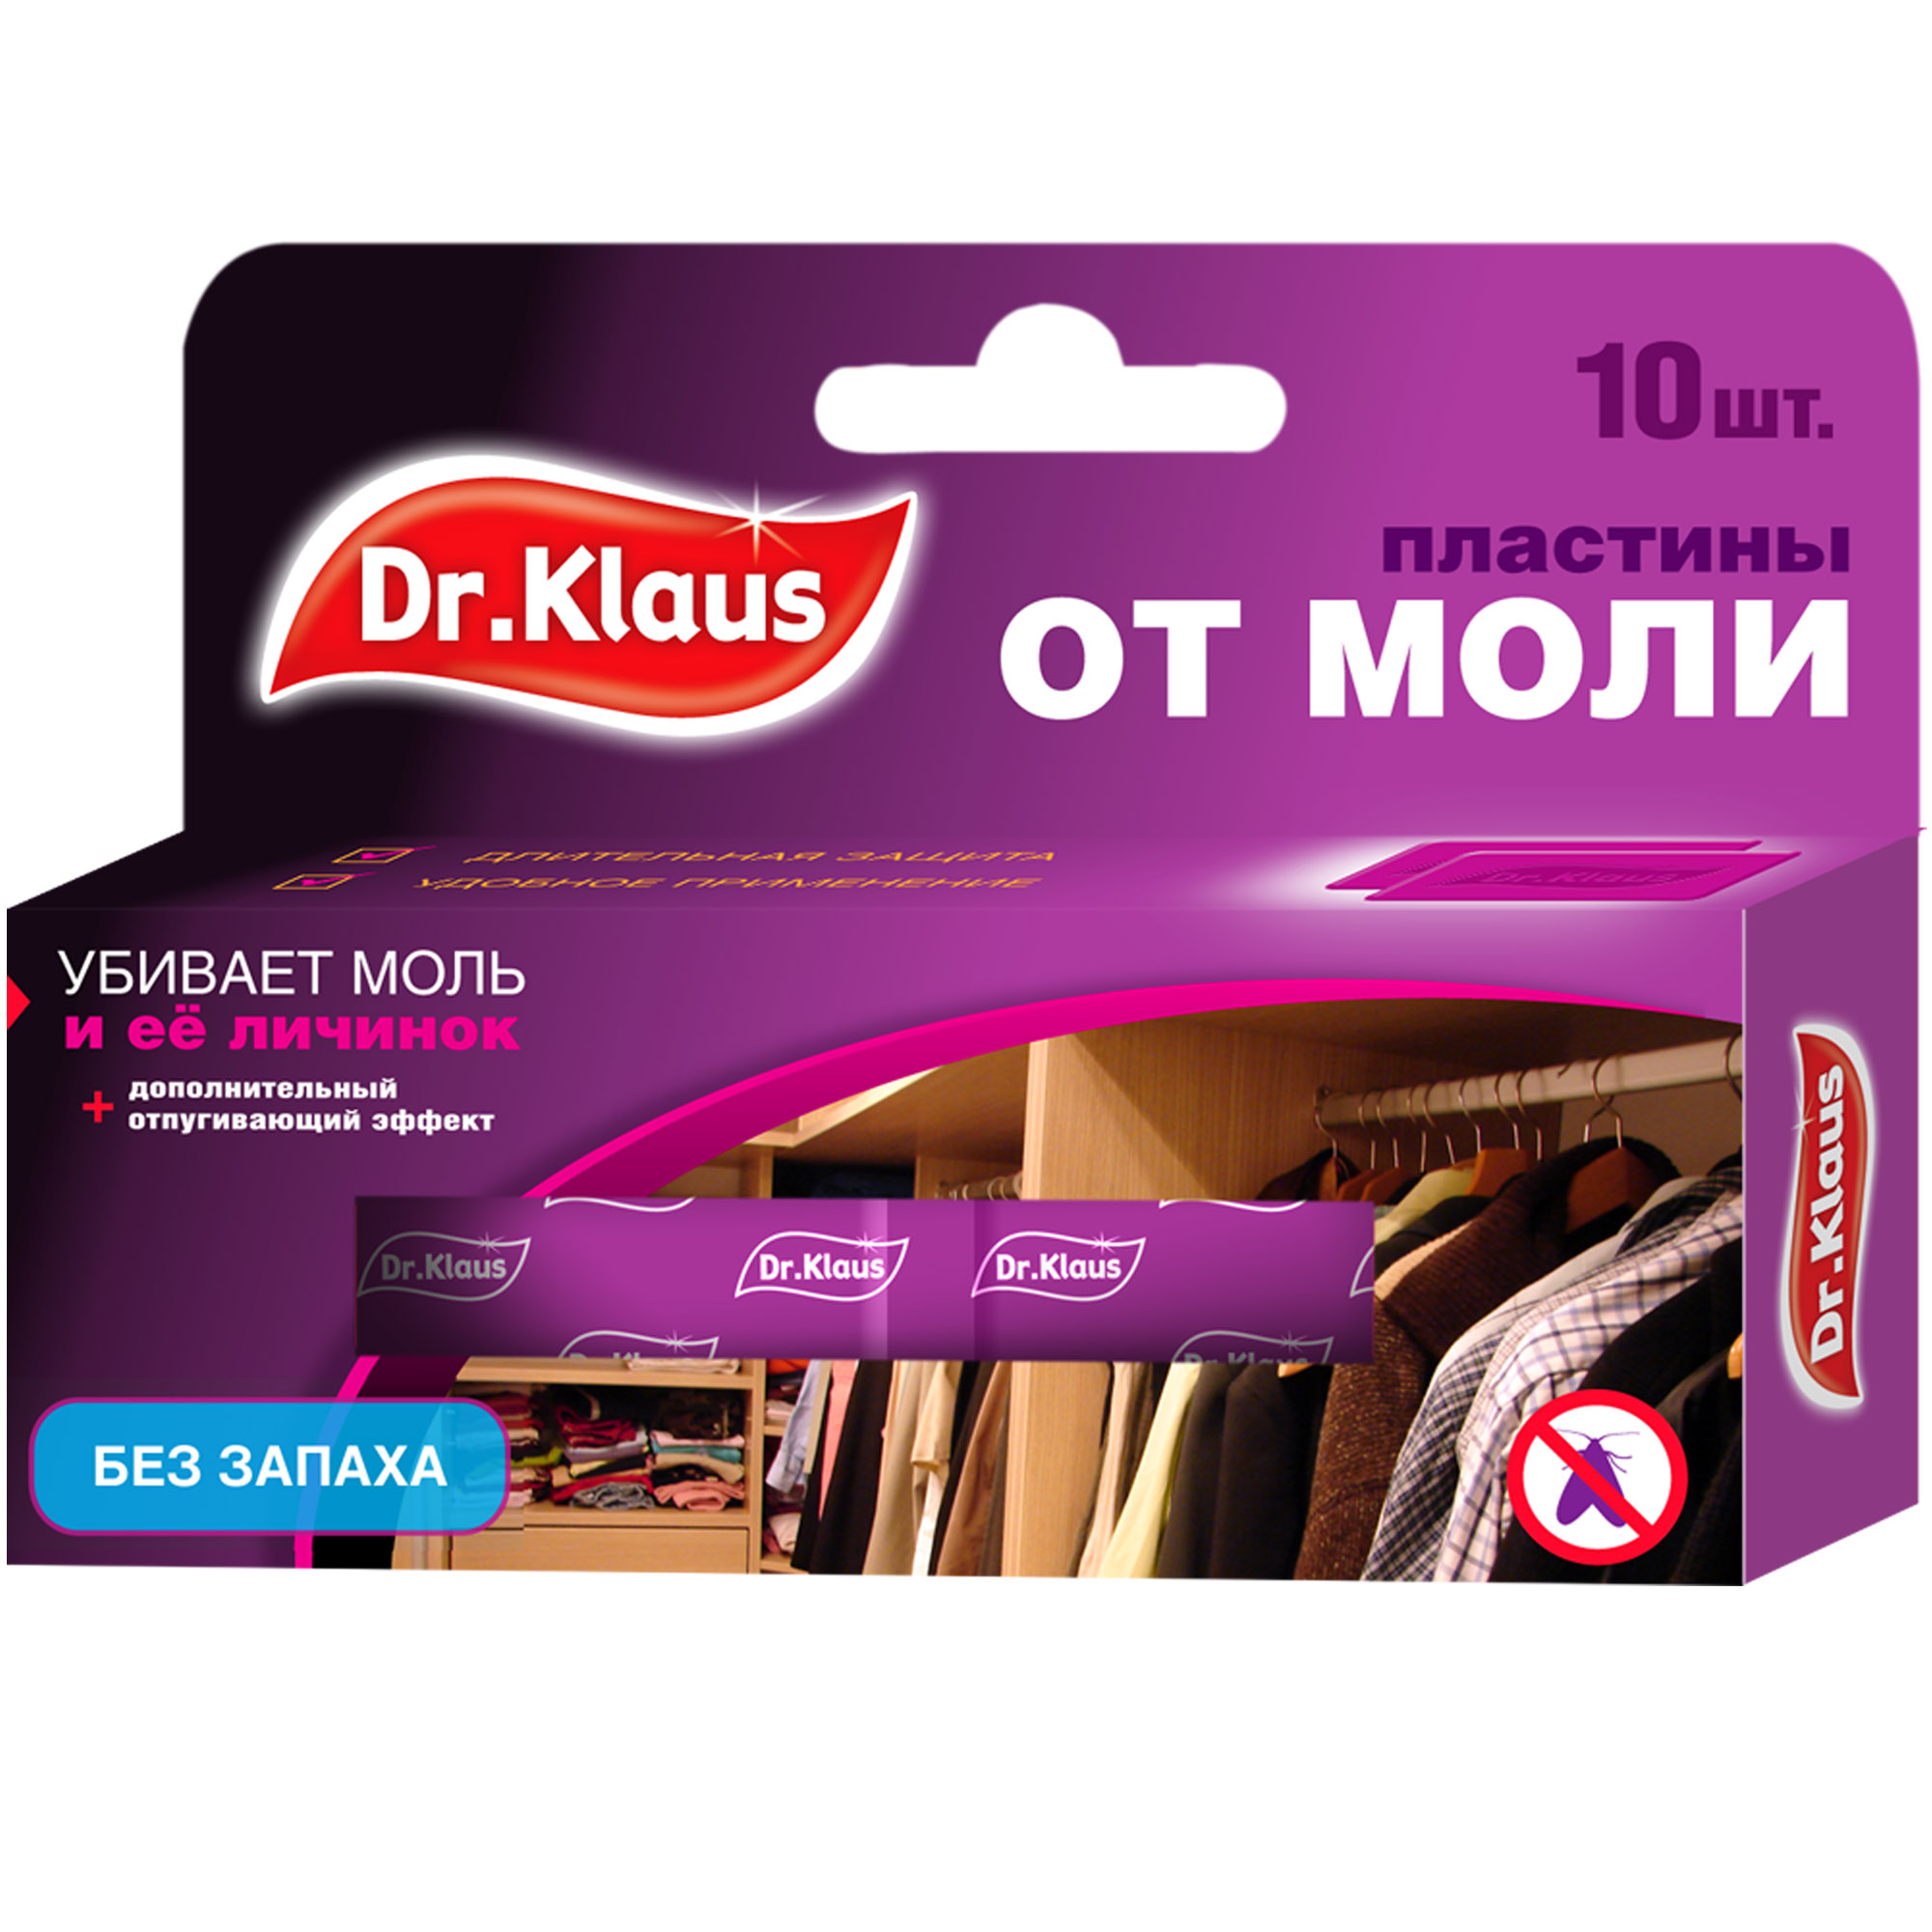 Пластины Dr.Klaus от моли и её личинок (без запаха), 10 шт. пепелатор dr klaus